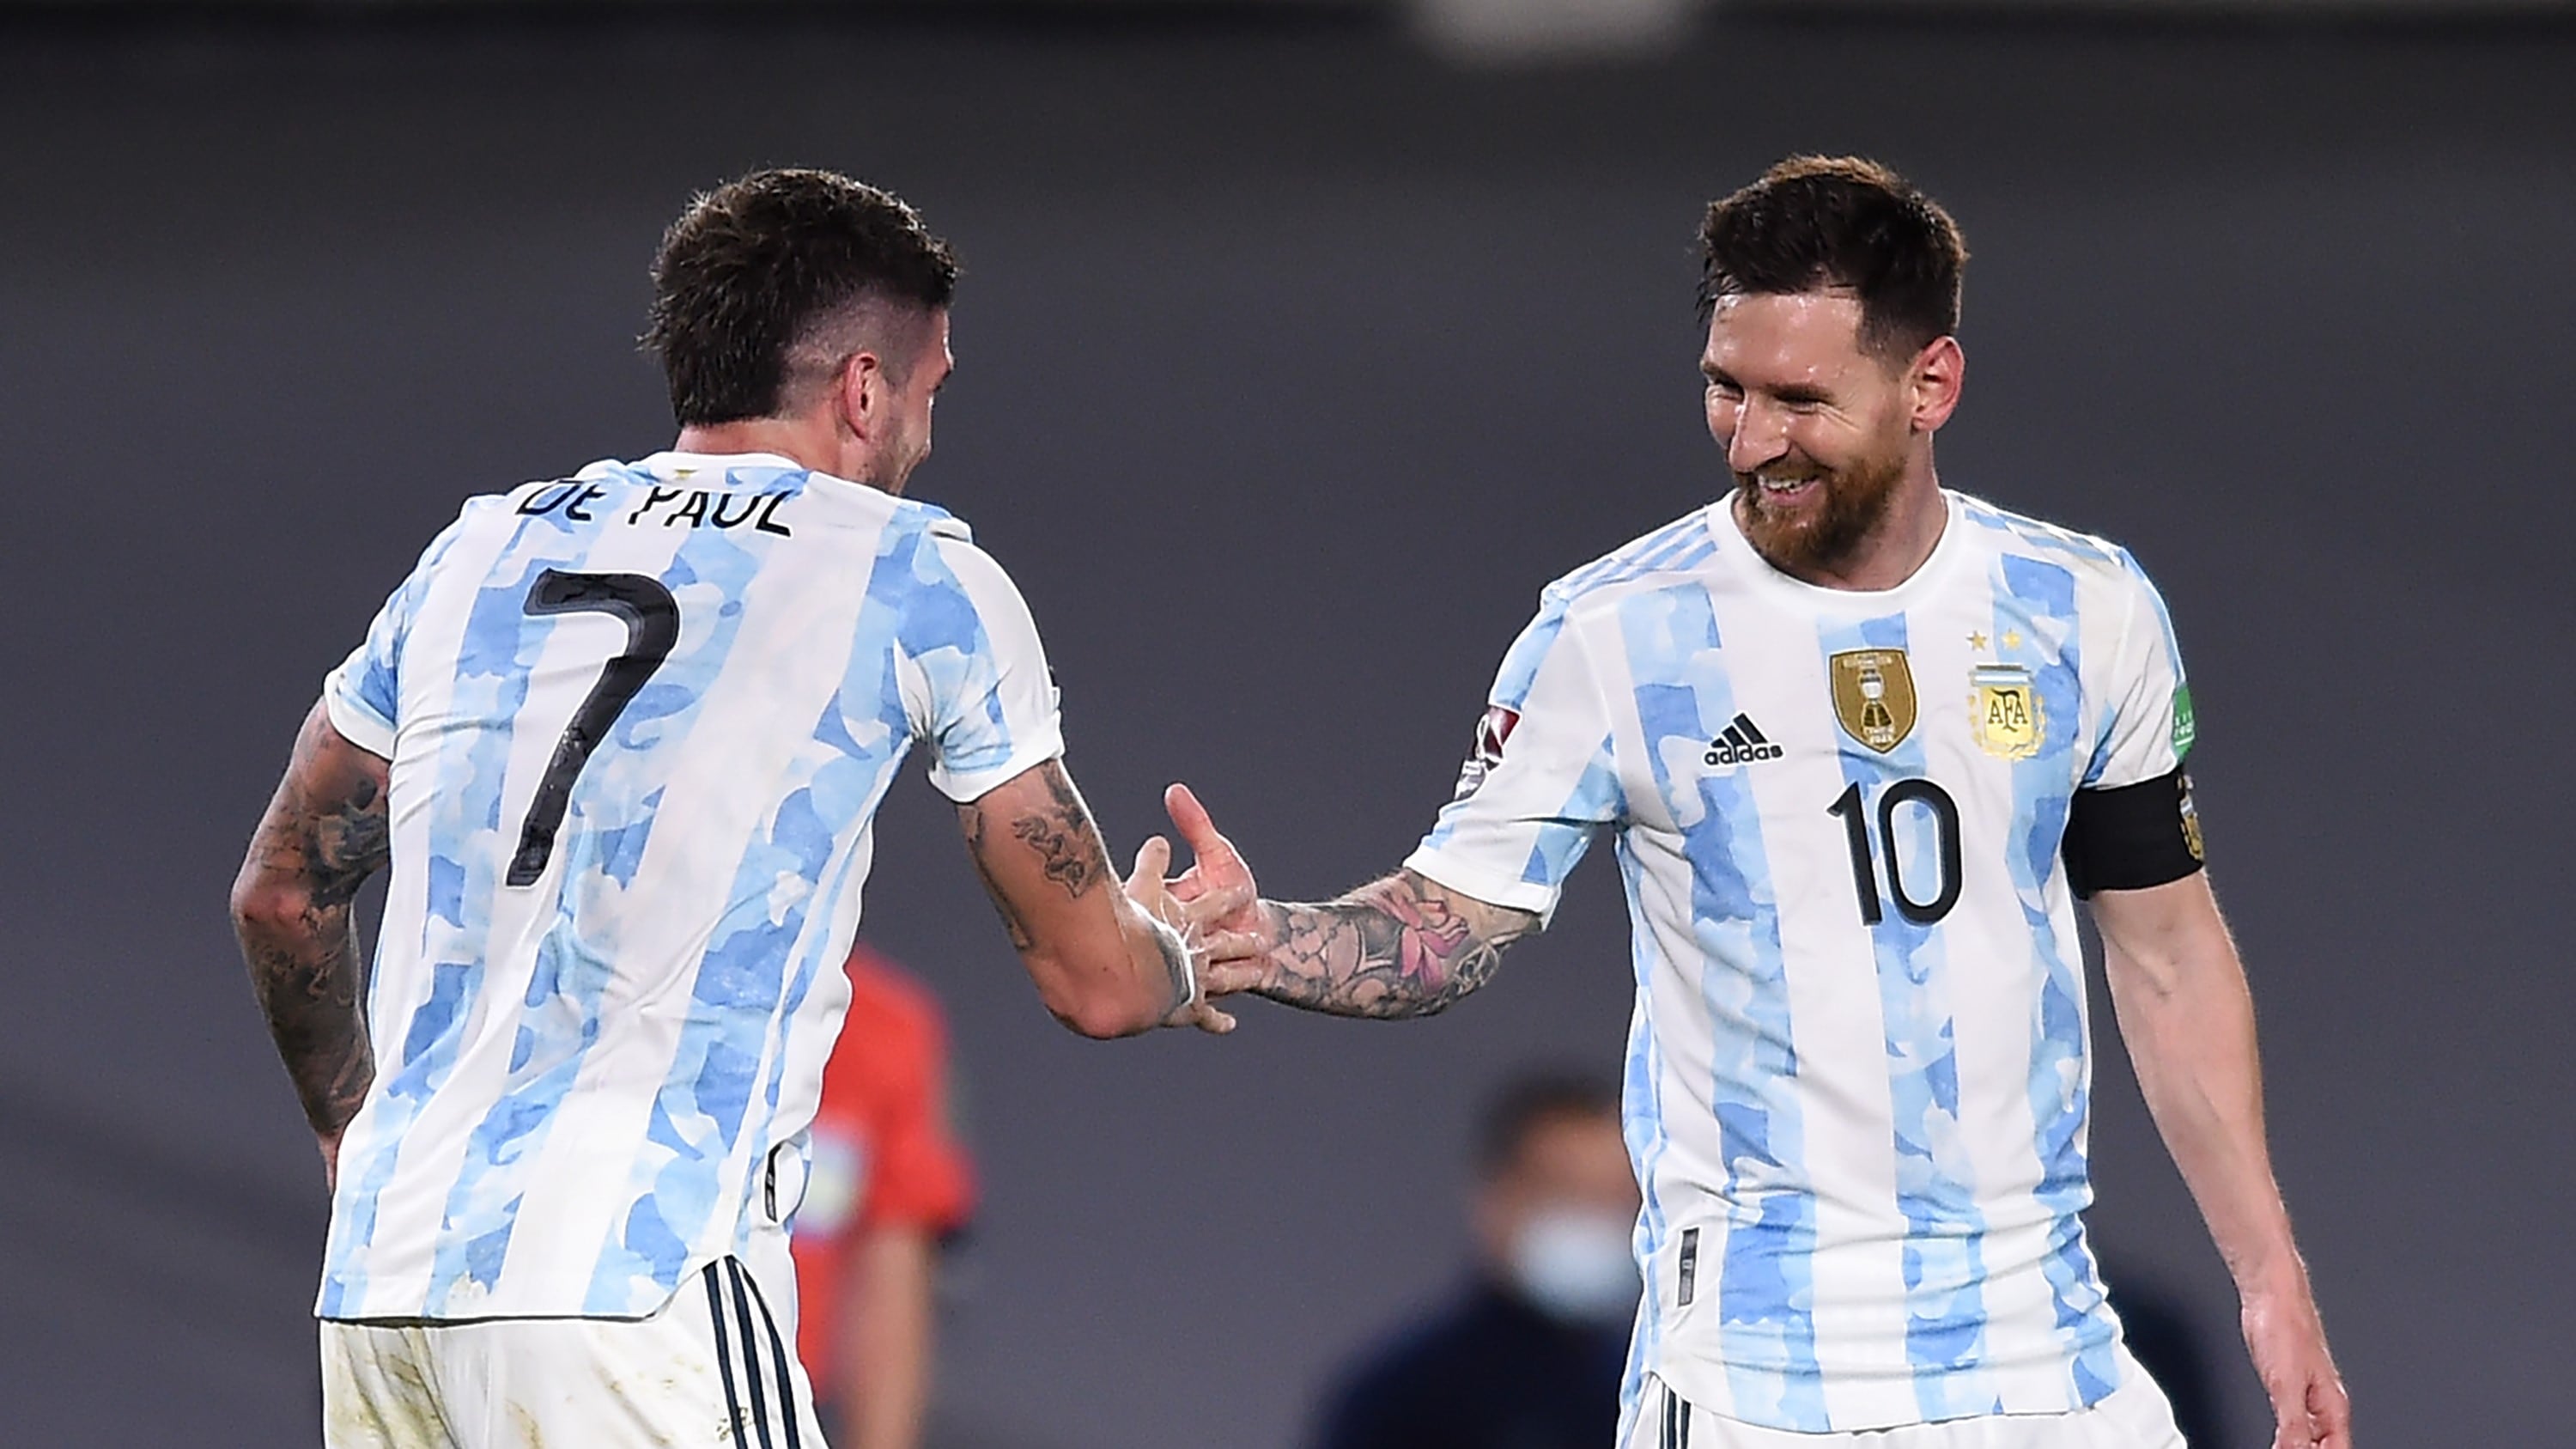 ¡La noche del 10! Messi brilló, hundió a Uruguay y así ayudó a Colombia